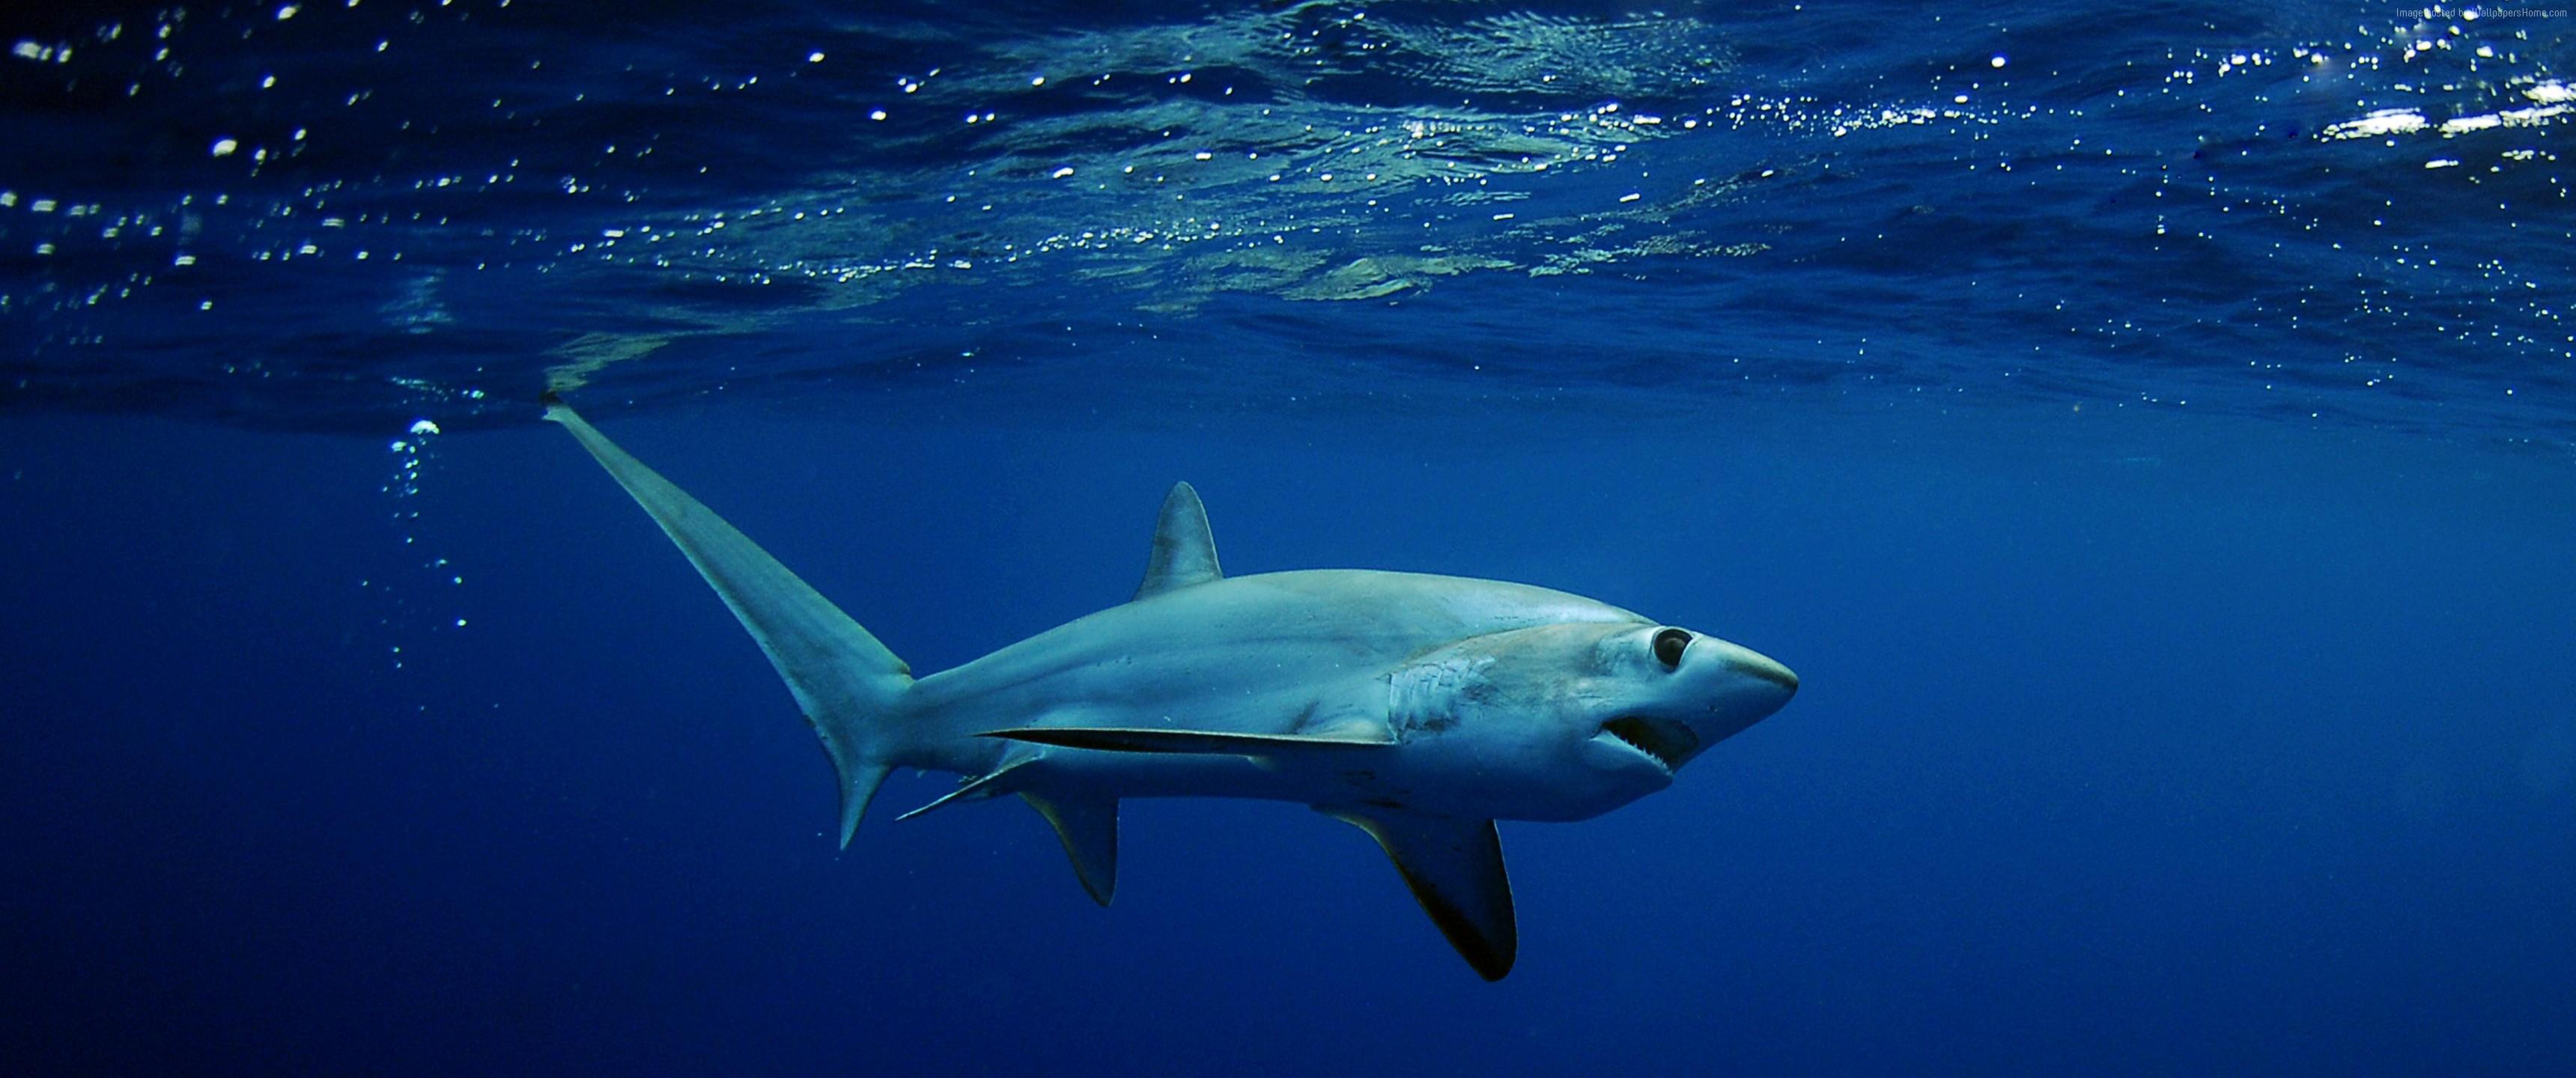 4k Wallpaper Shark Underwater Best Diving Sites Wallpaper